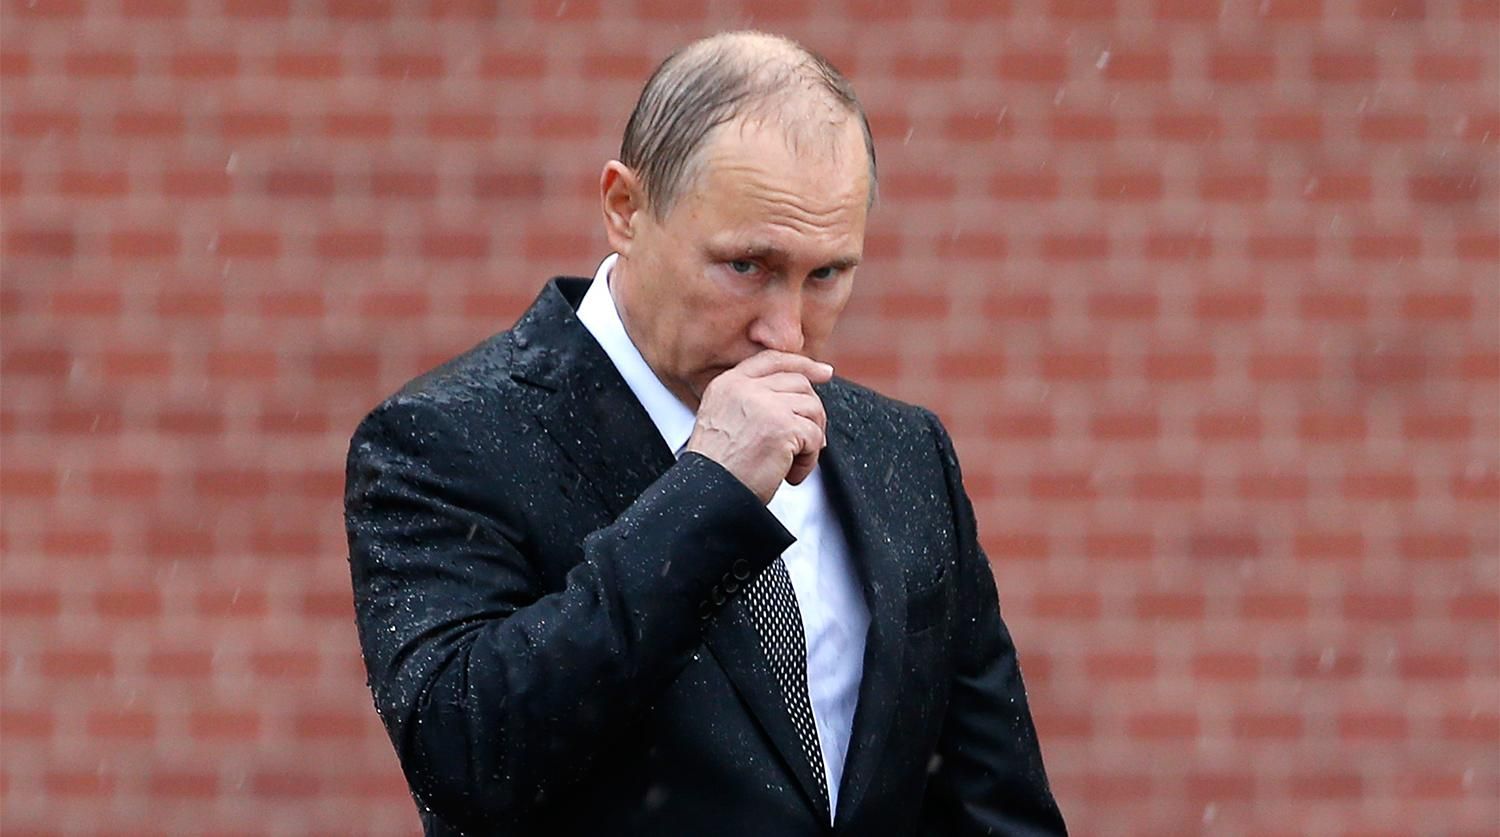 Двигаться Путину некуда – ни в Украине, ни в других местах, – российский журналист